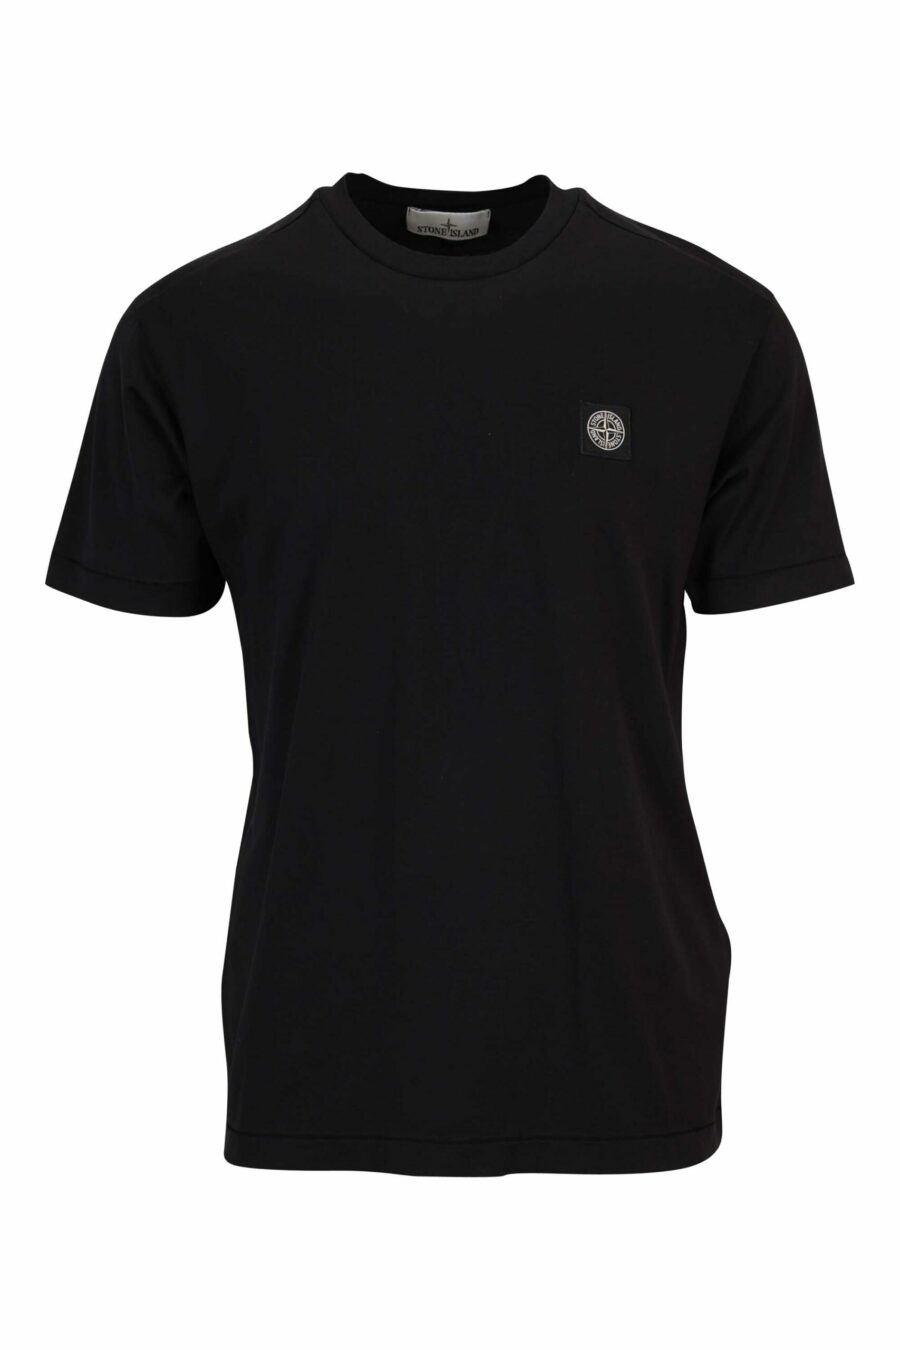 T-shirt noir avec logo mini boussole - 8052572851964 scaled